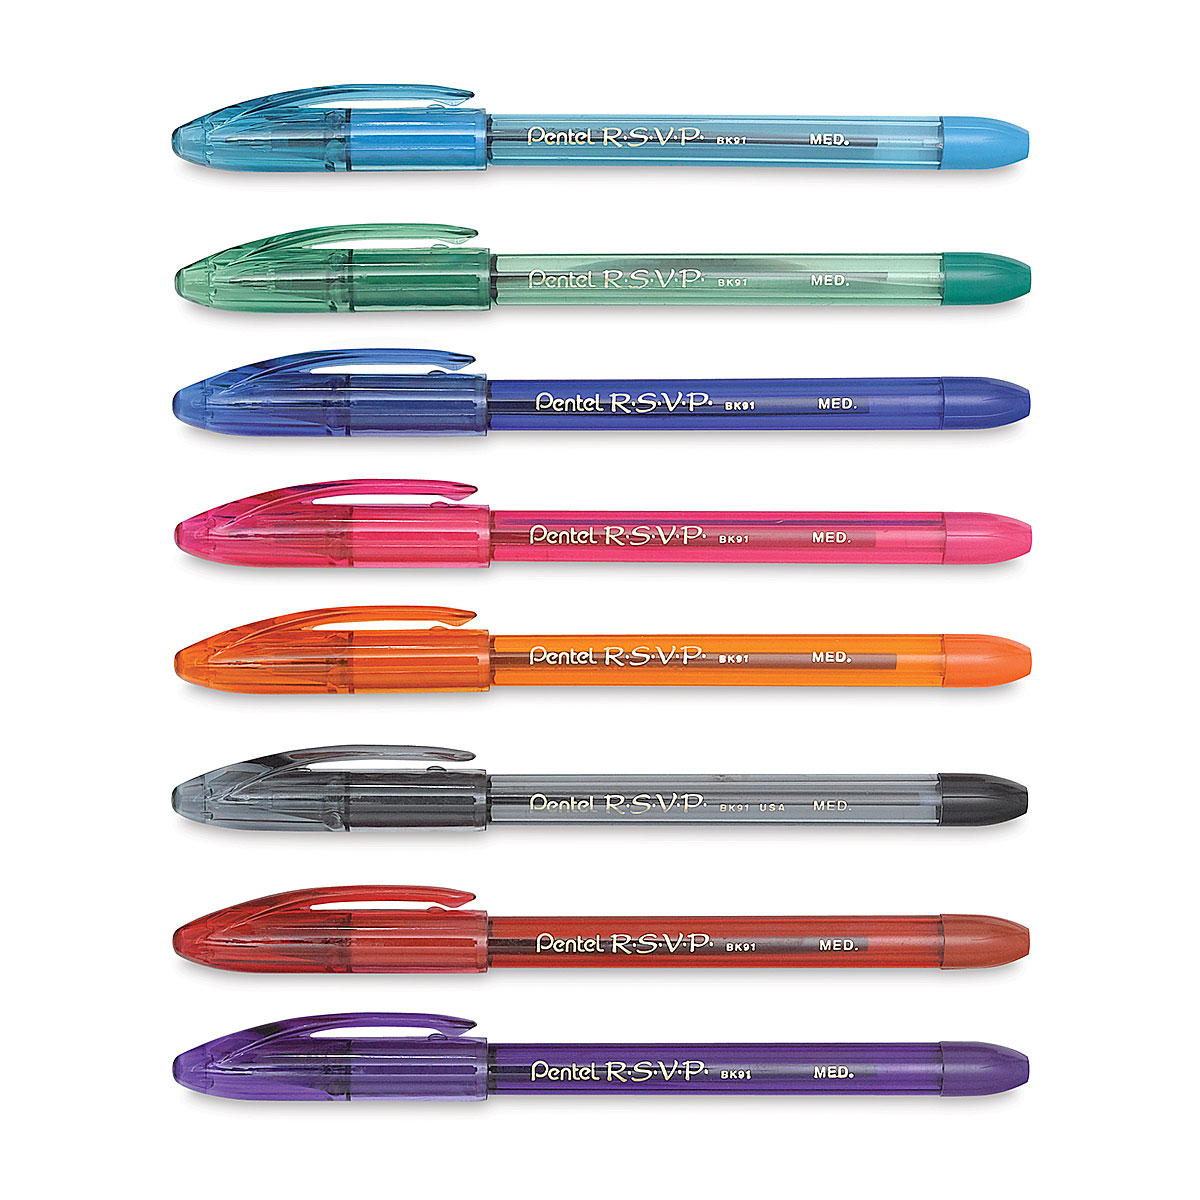 Pentel Color Pens